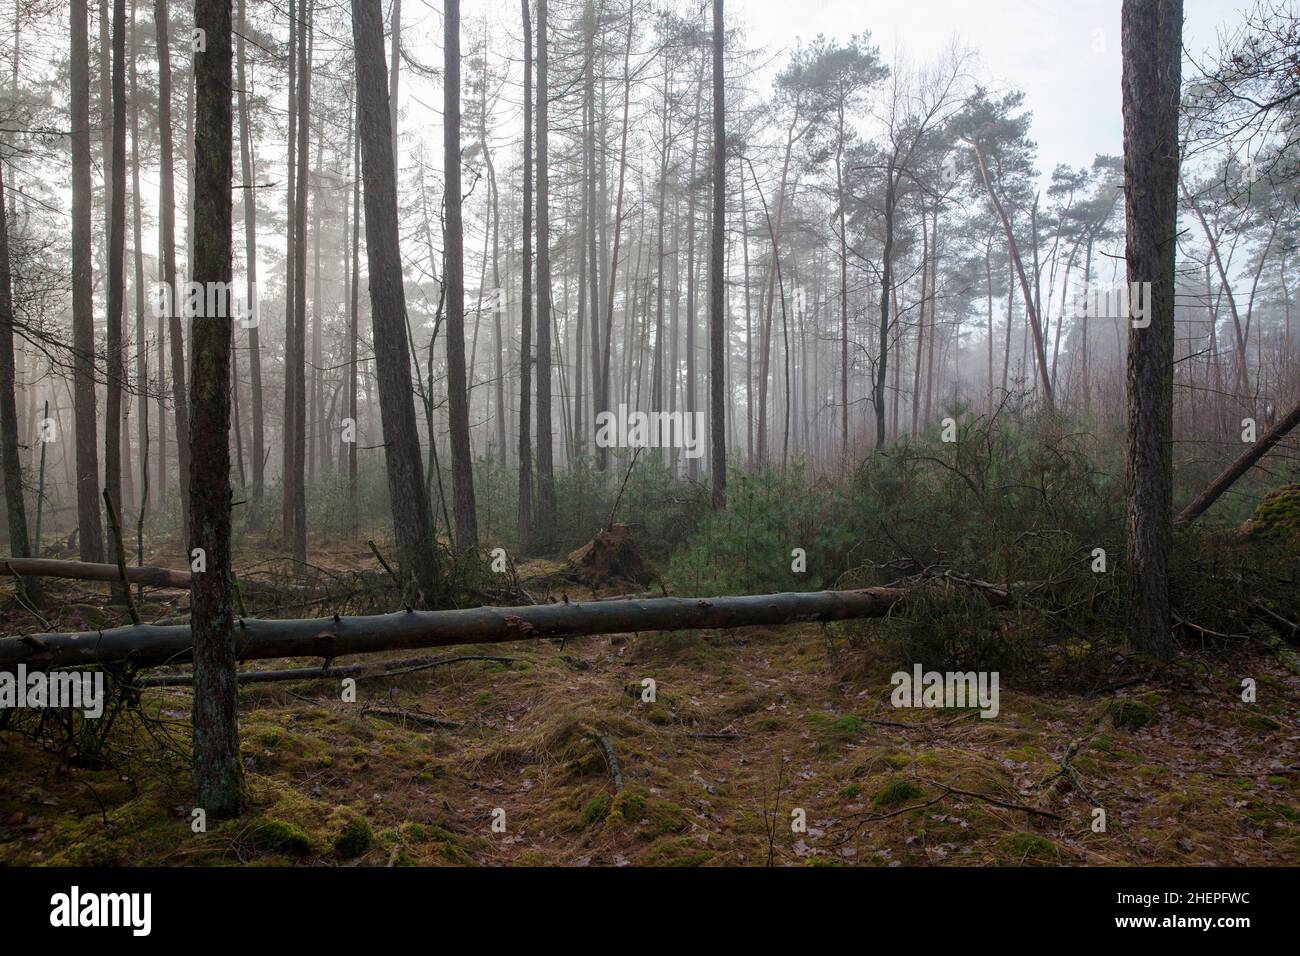 in a forest near Huenxe, Lower Rhine, North Rhine-Westphalia, Germany.  Wald bei Huenxe, Niederrhein, Nordrhein-Westfalen, Deutschland. Stock Photo